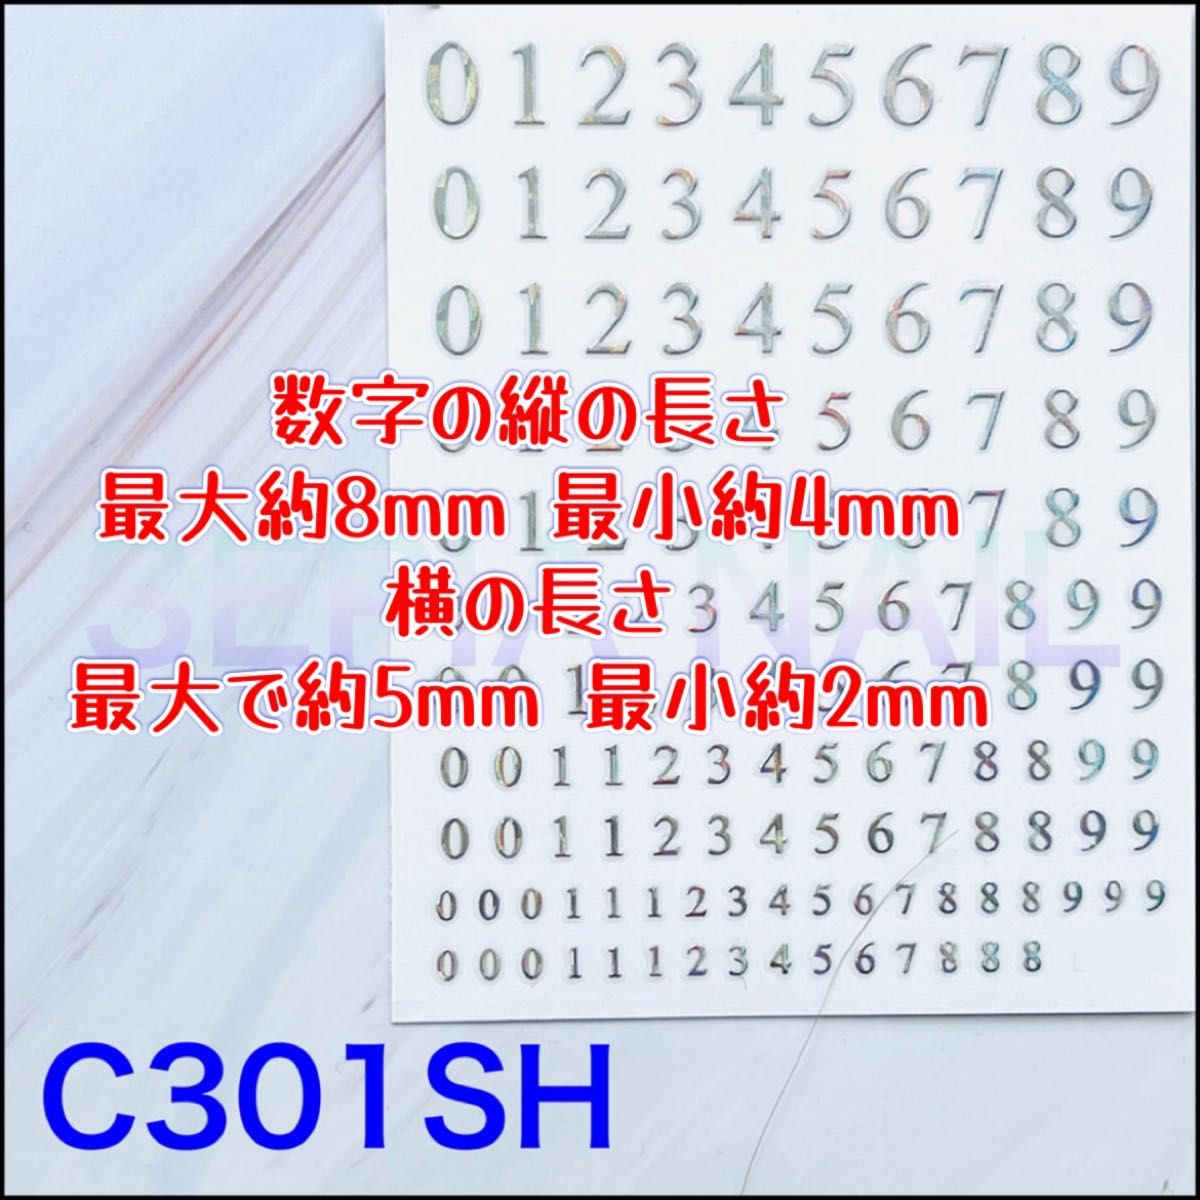 ネイルシール ステッカー 数字 大小 シルバーホログラム 【C301SH】11271951